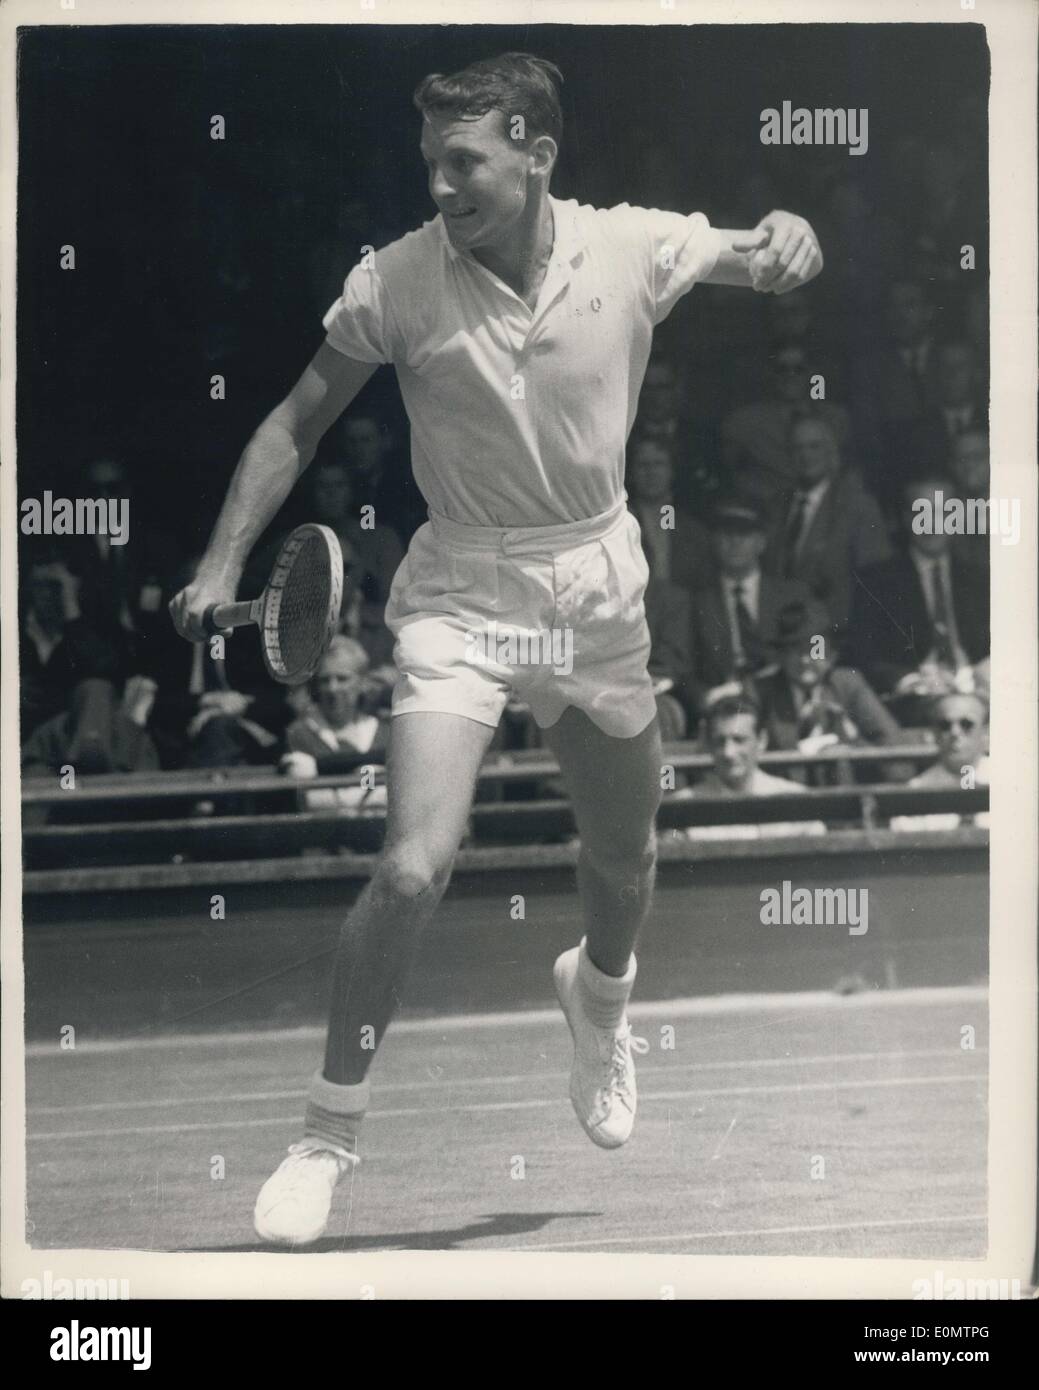 27. Juni 1956 - schlägt Wimbledon Championships Richardson von den USA Arkinstall Australiens. Foto zeigt Richardson, der Vereinigten Staaten im Spiel während seines Spiels mit J. Arkinstall von Australien - in Wimbledon heute Nachmittag Richardson gewann 6: 4; 9-7; 11-13; 8-6. Stockfoto